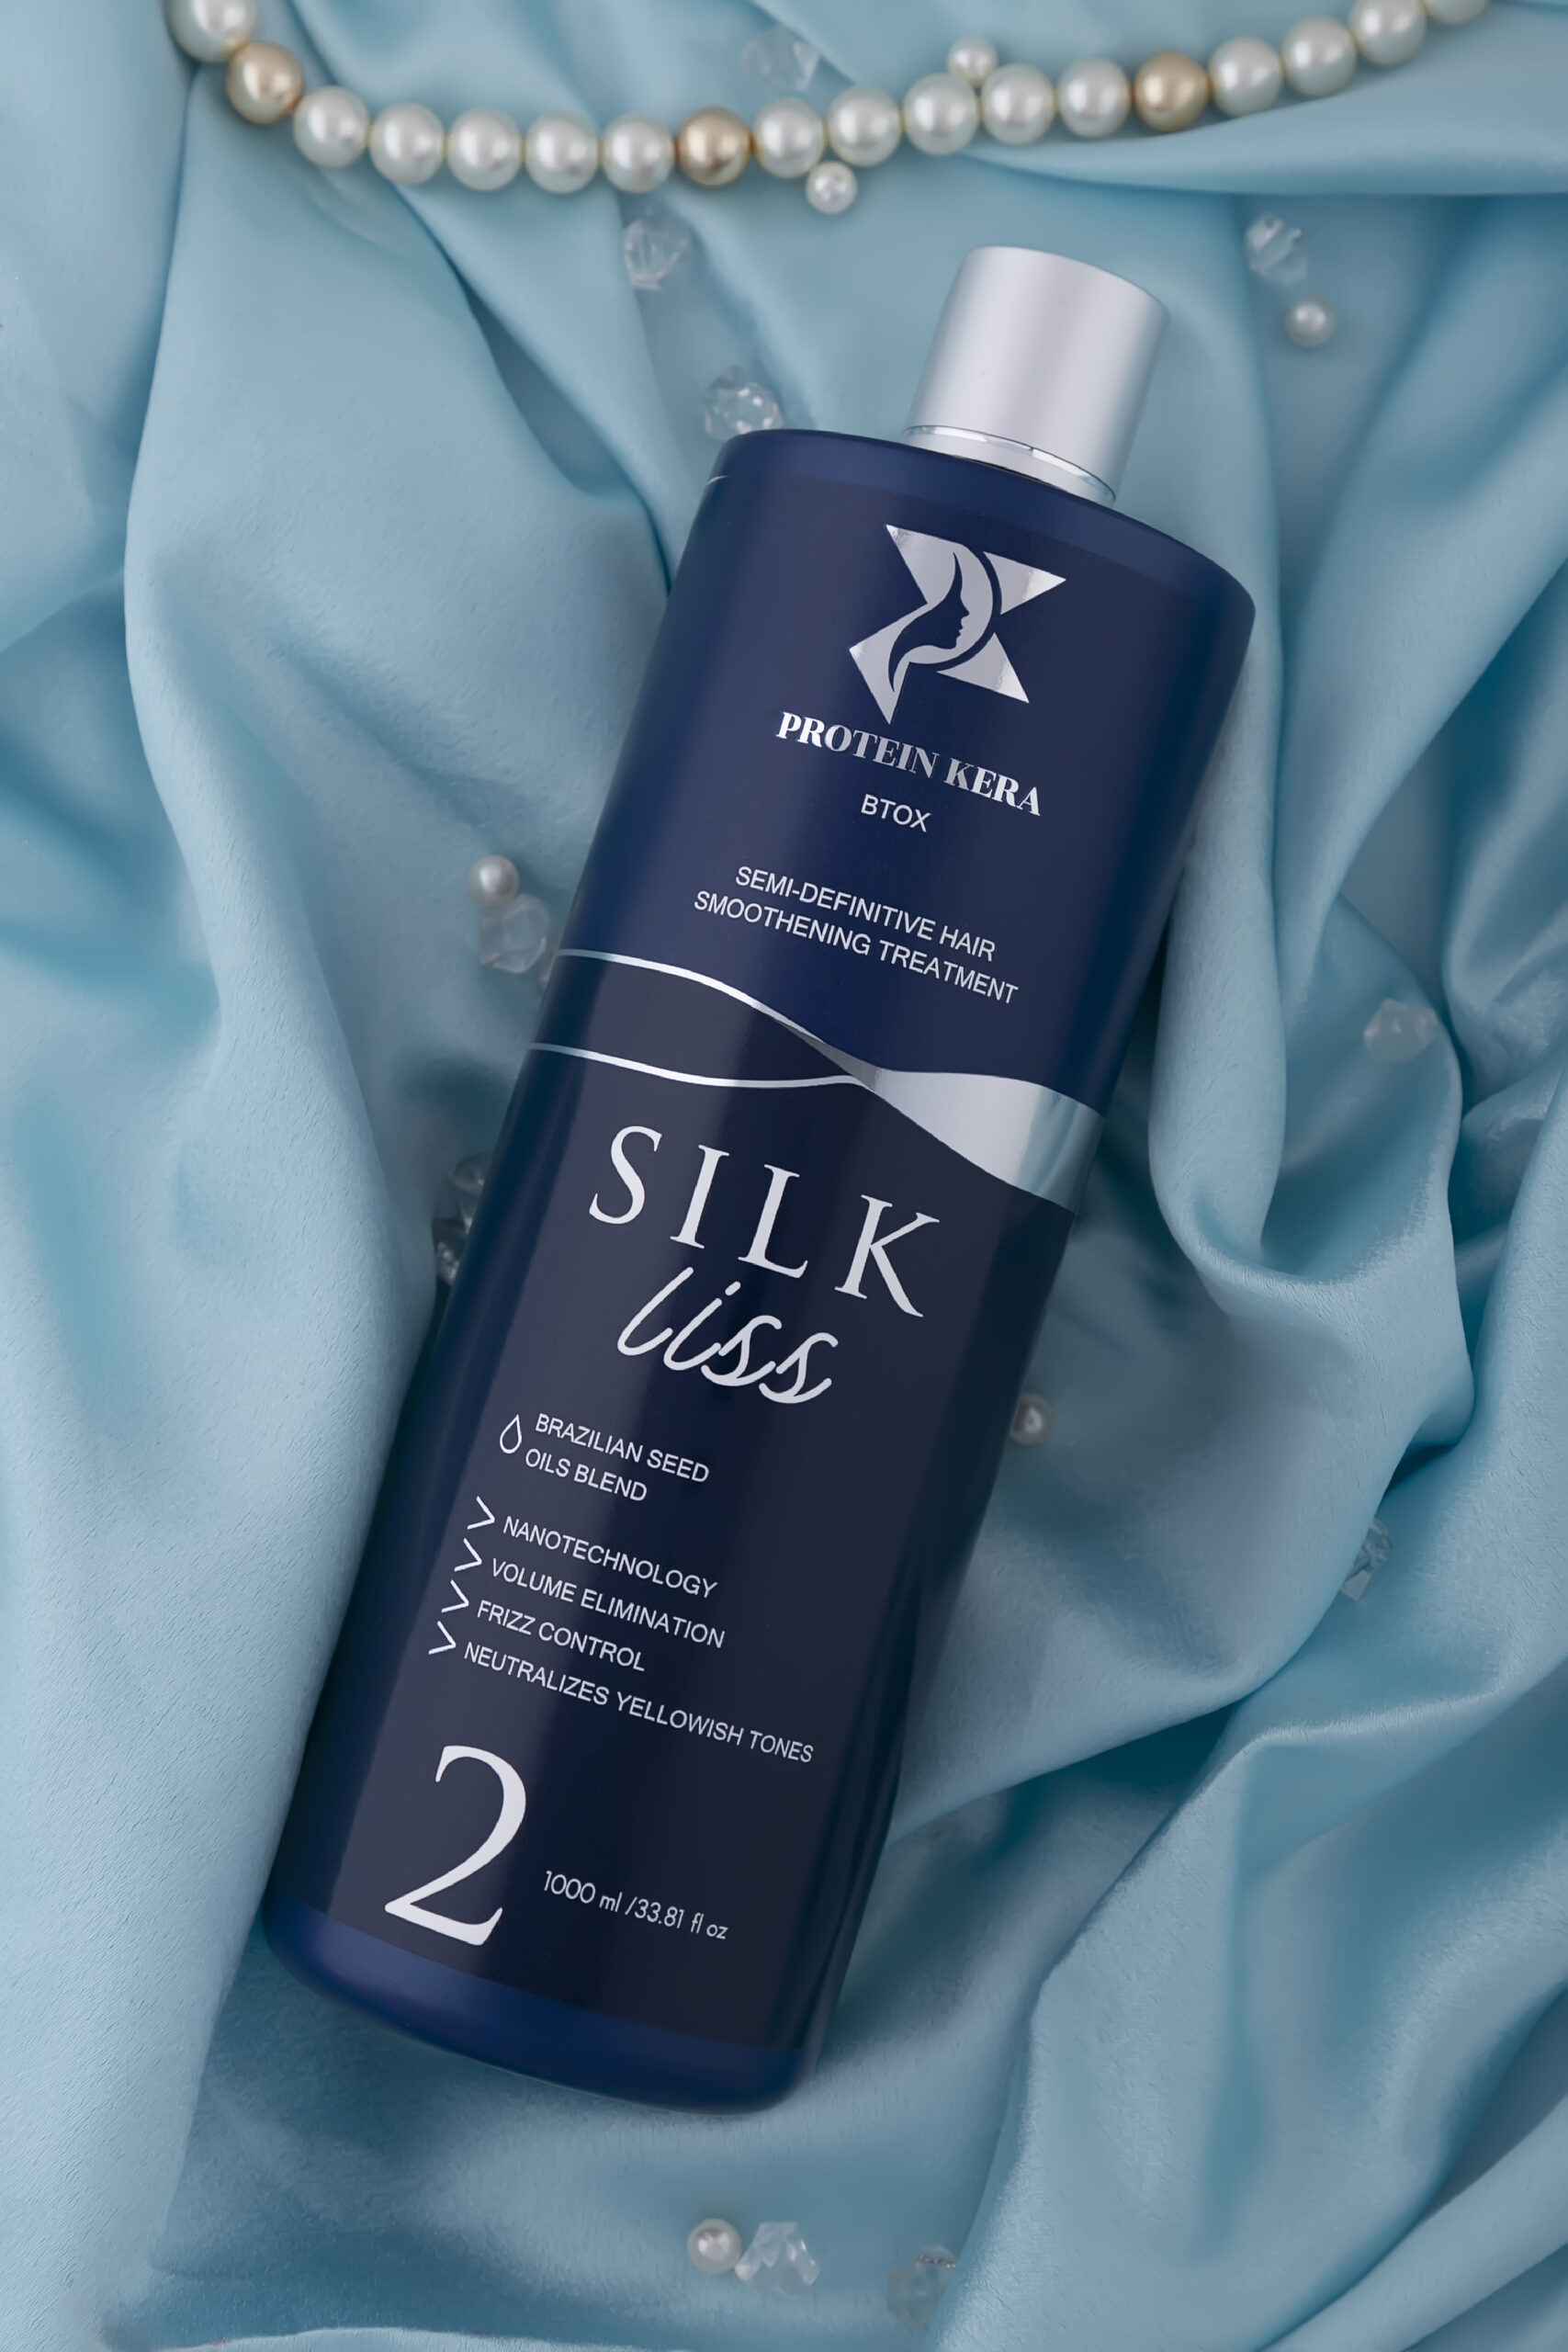 Protein Kera BTOX SilkLiss gives ultimate hair bliss - StyleSpeak